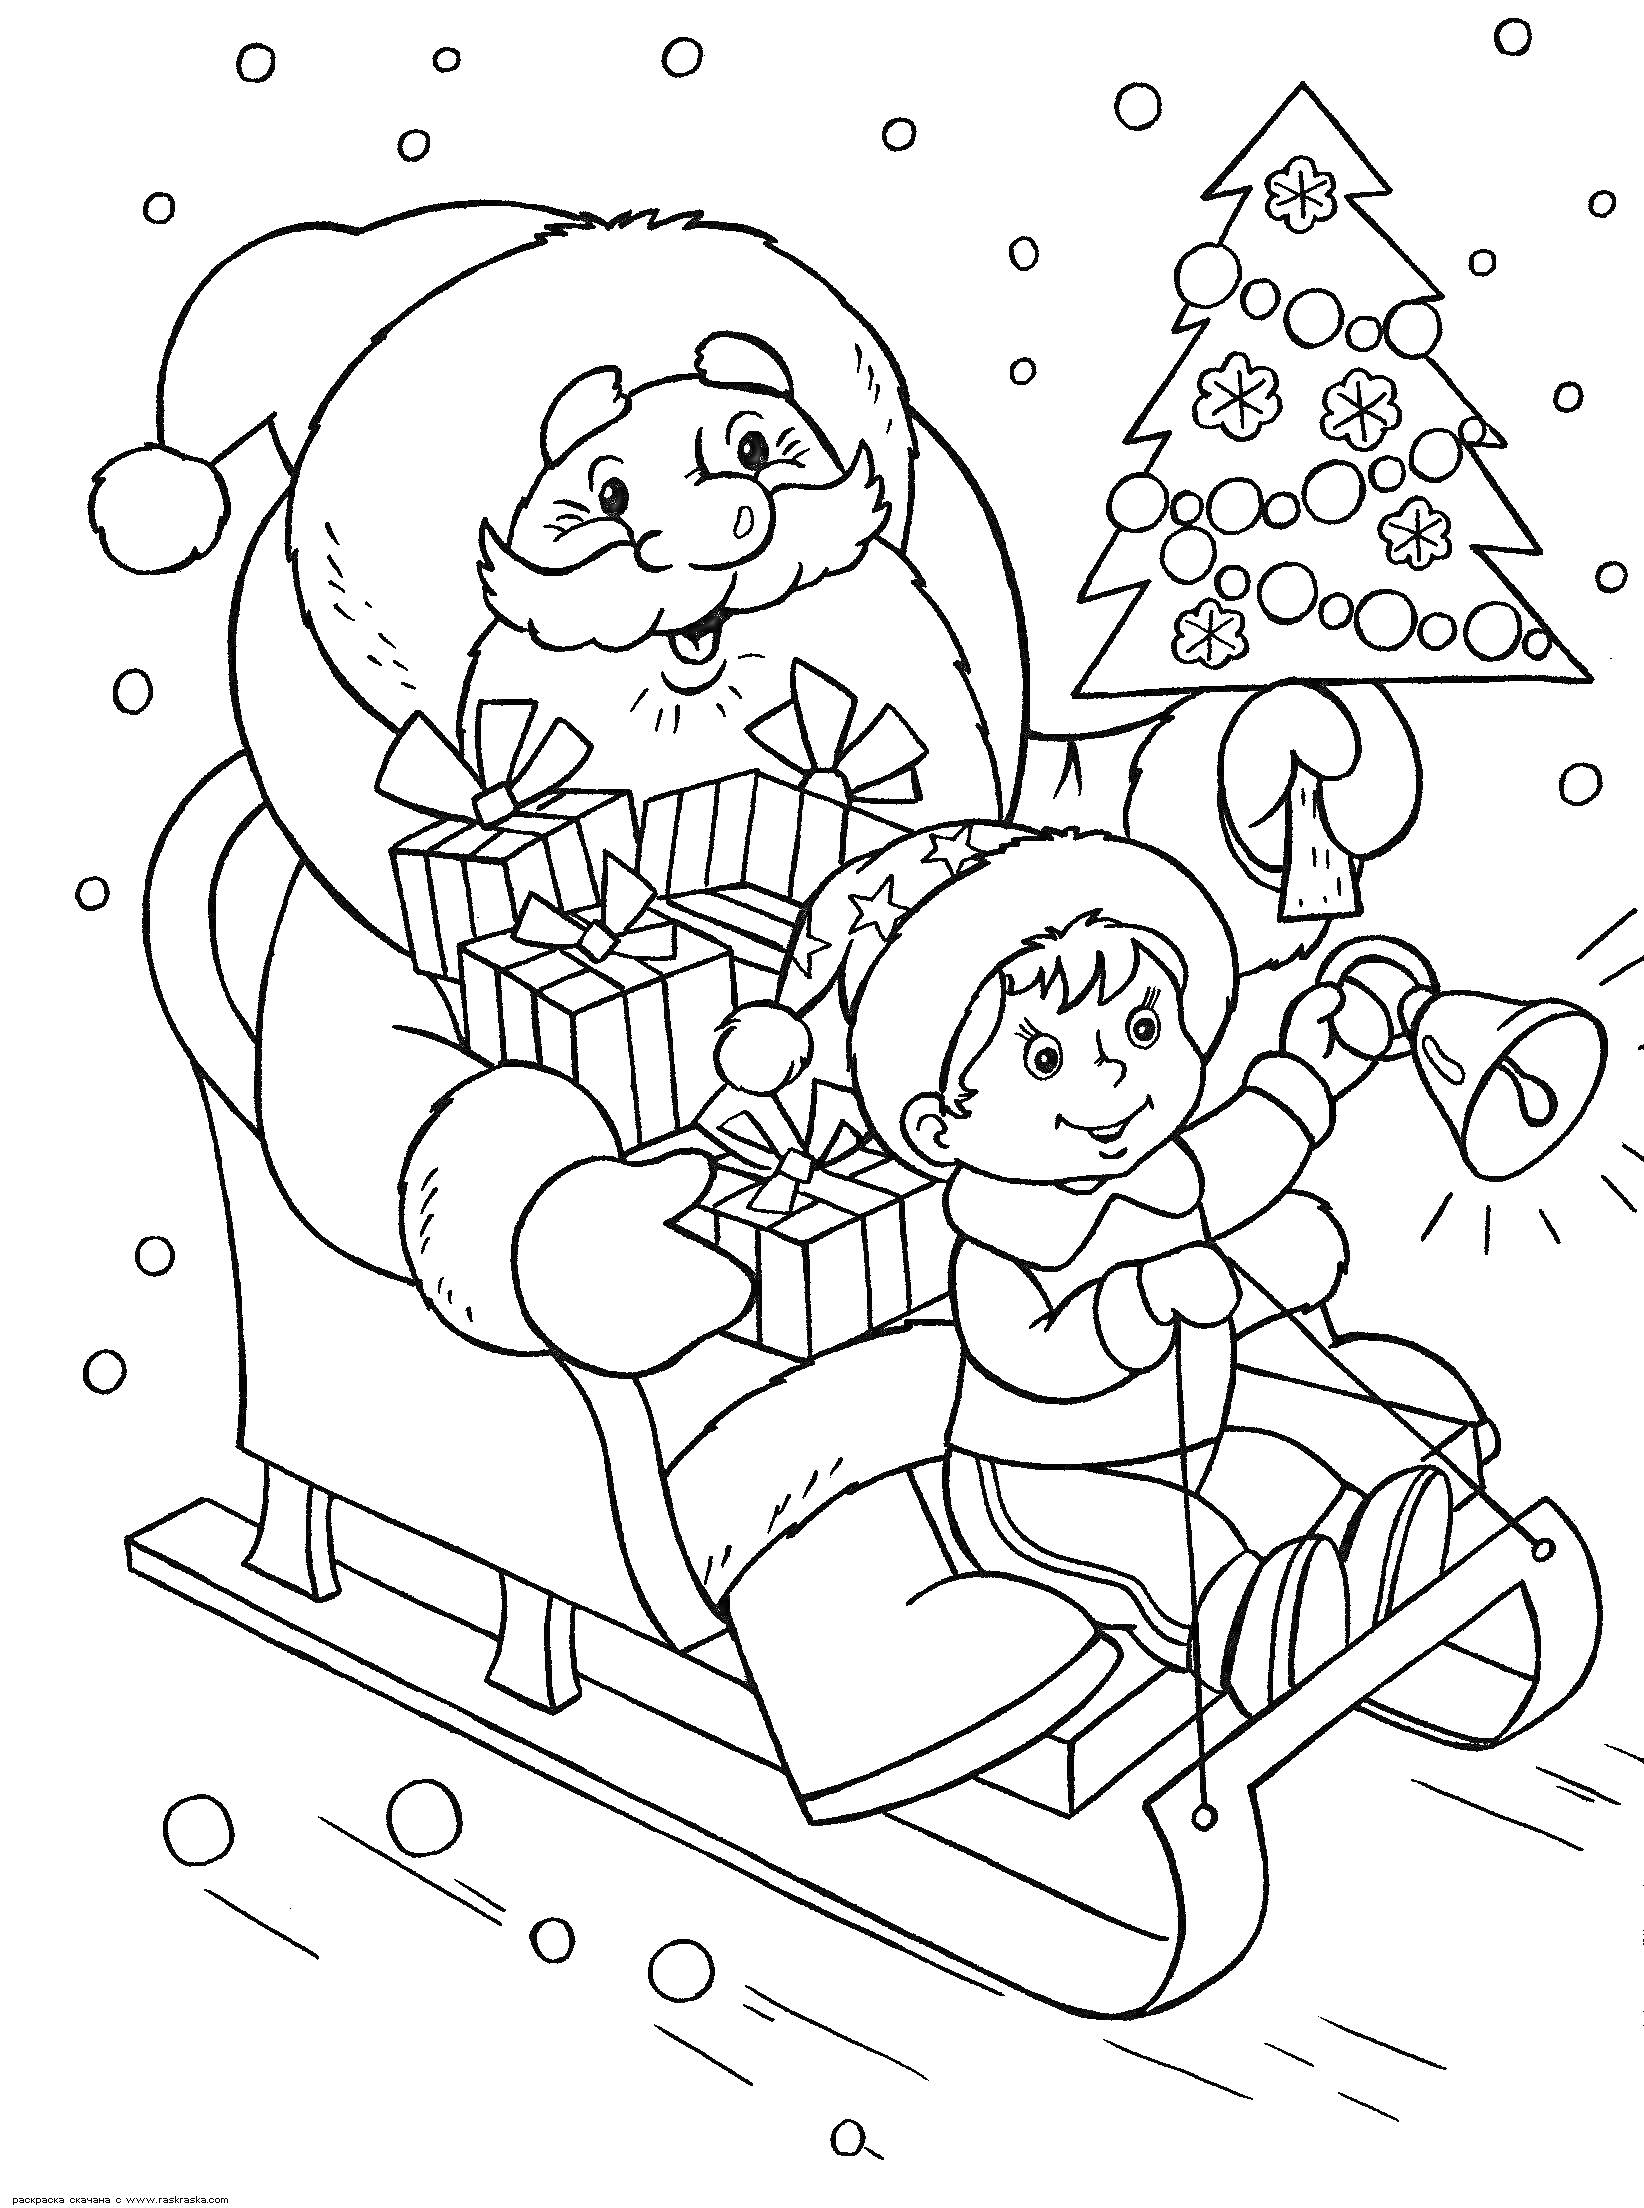 Дед Мороз с подарками и ребенок с колокольчиком на санях в новогоднюю ночь